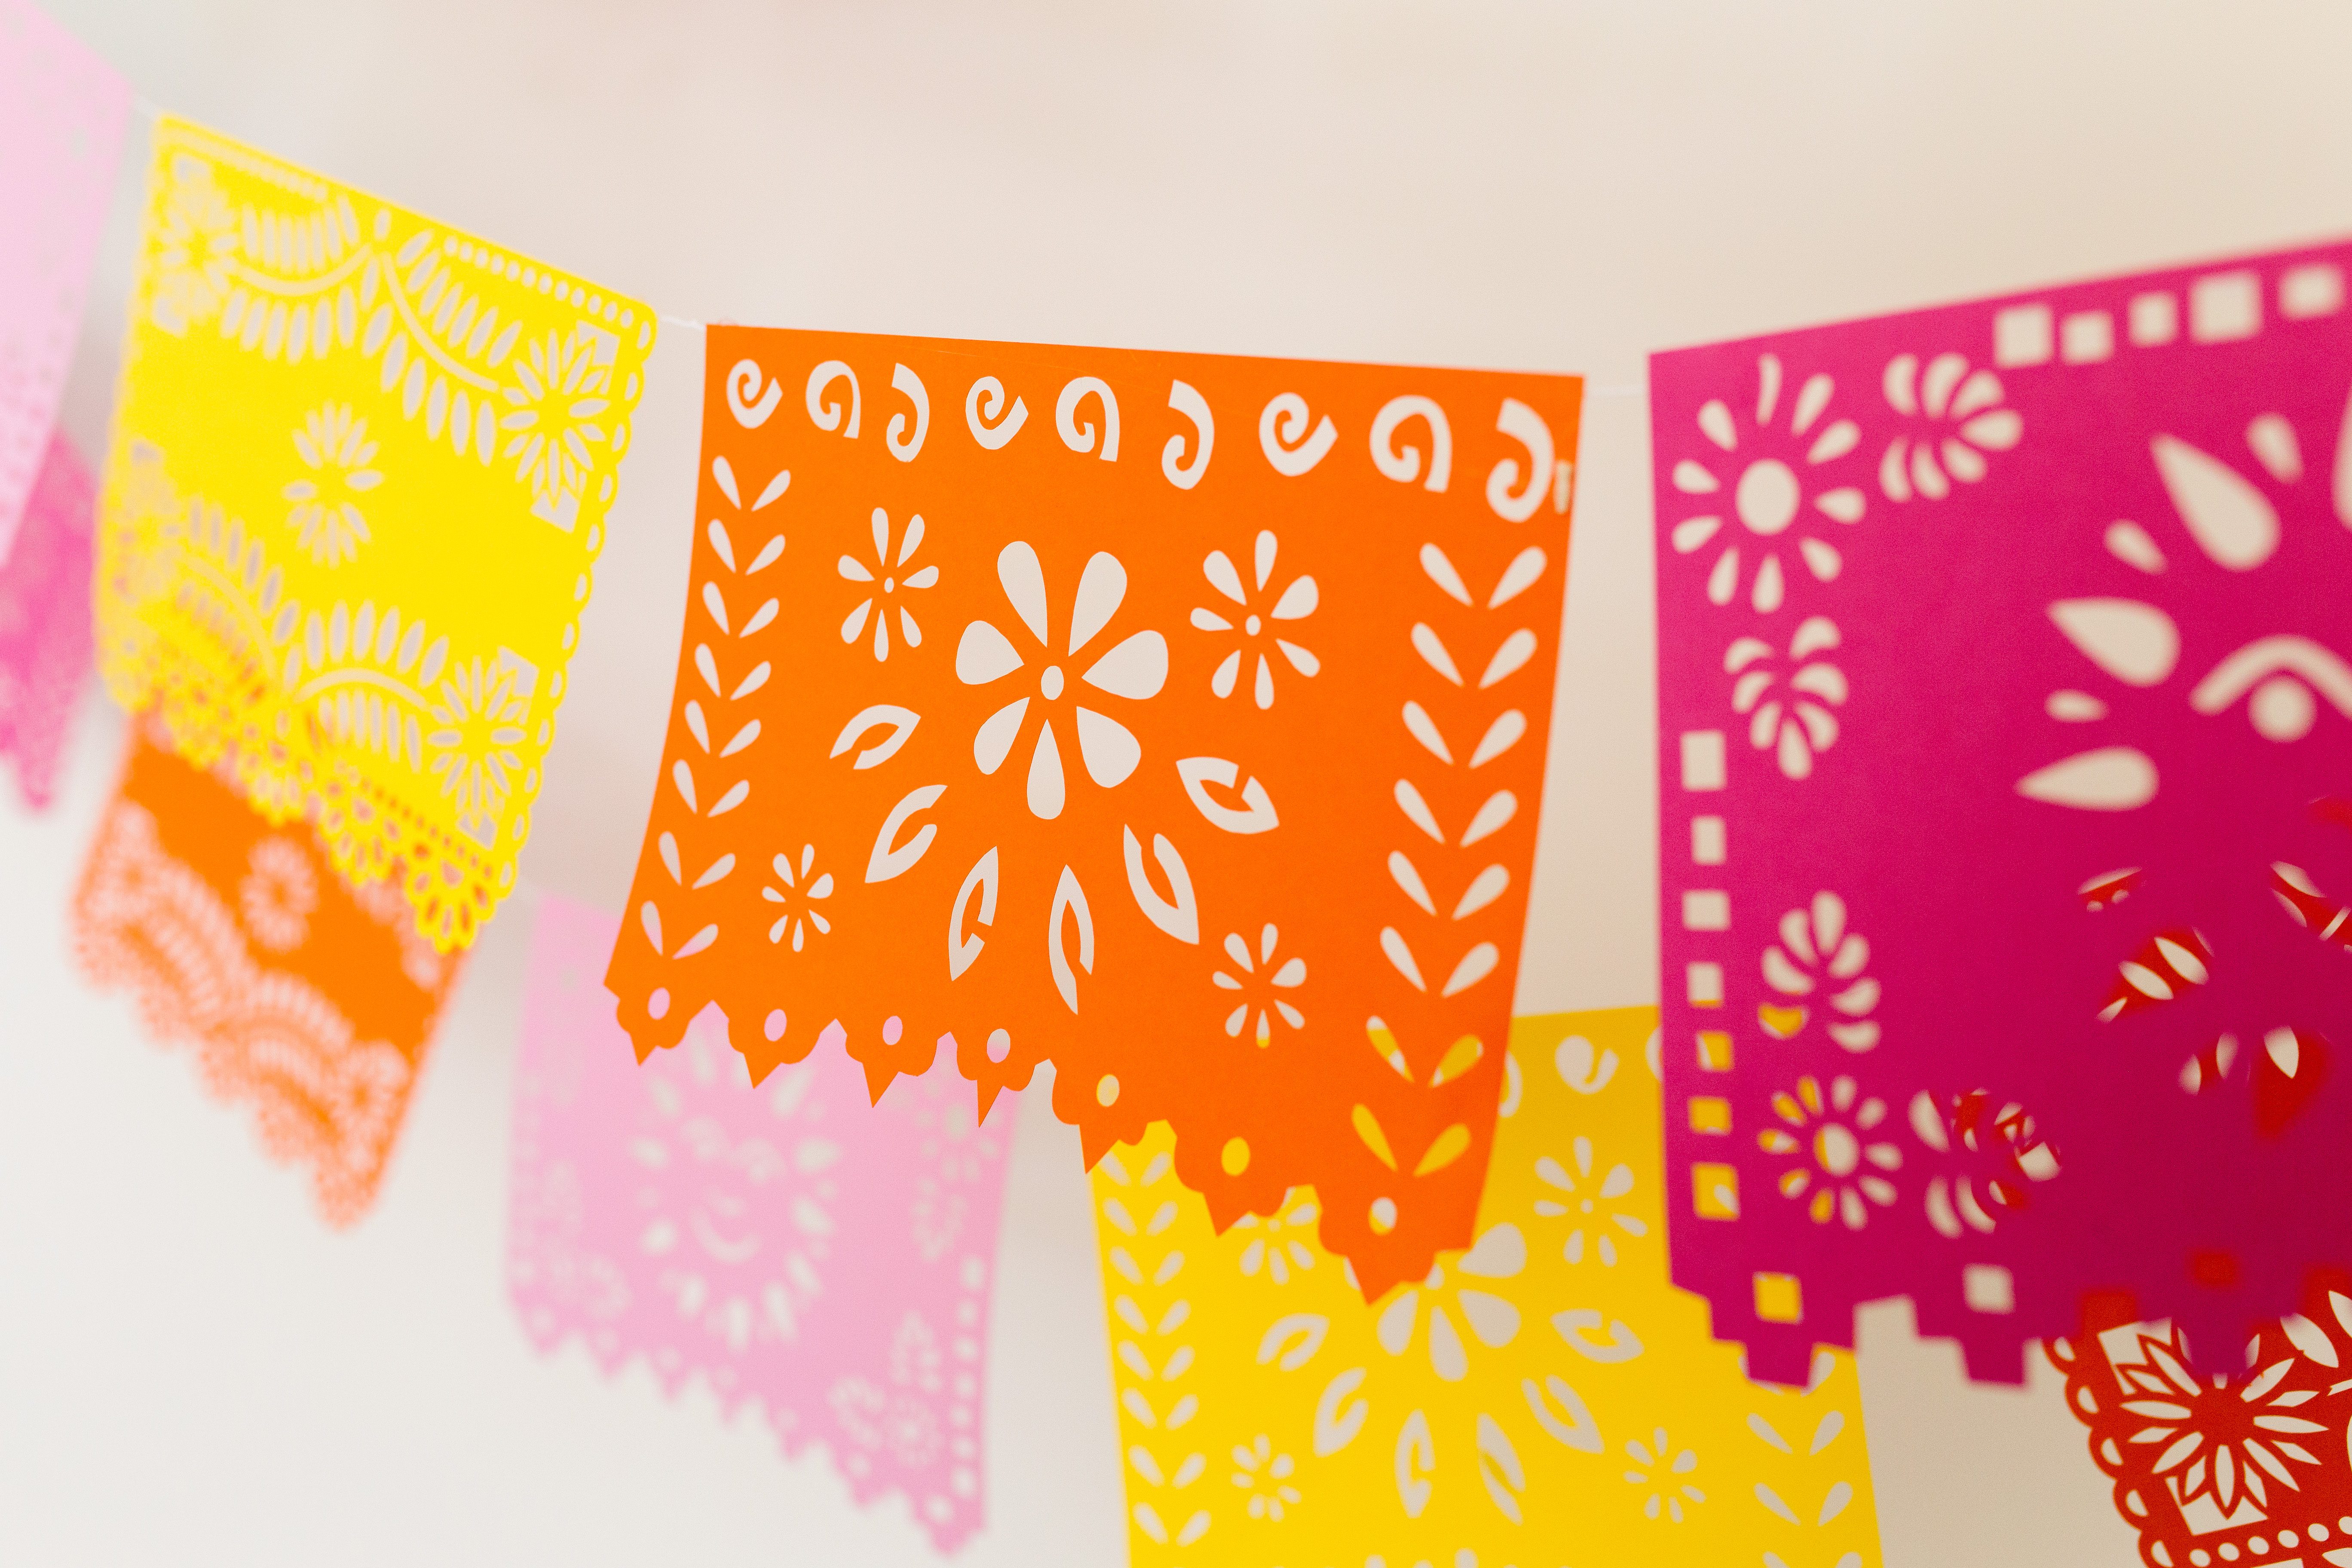 DIY Cinco De Mayo Fiesta Banner - Papel Picado - The Crafting Chicks